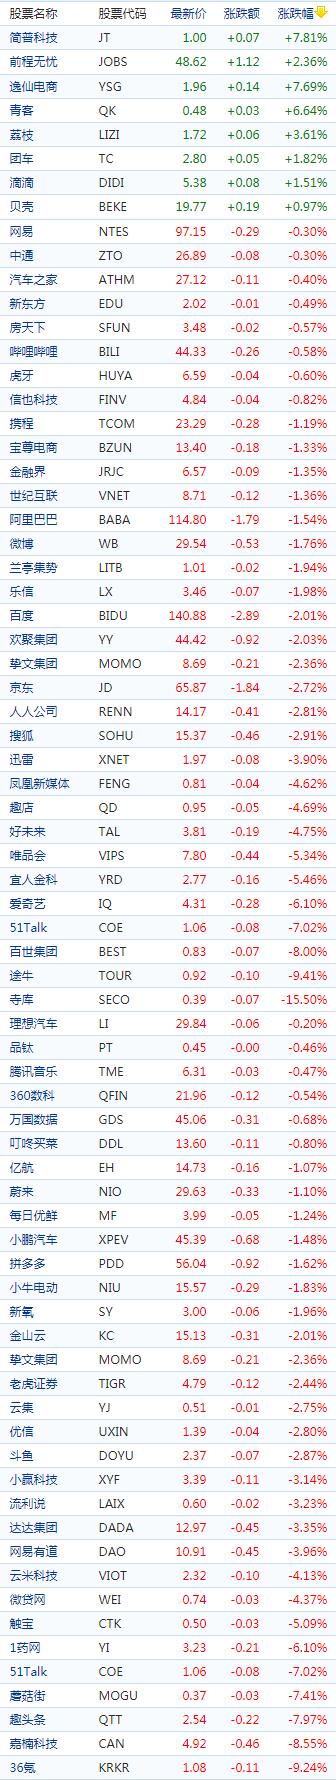 中国概念股周二收盘多数下跌教育股普跌寺库重挫逾15%